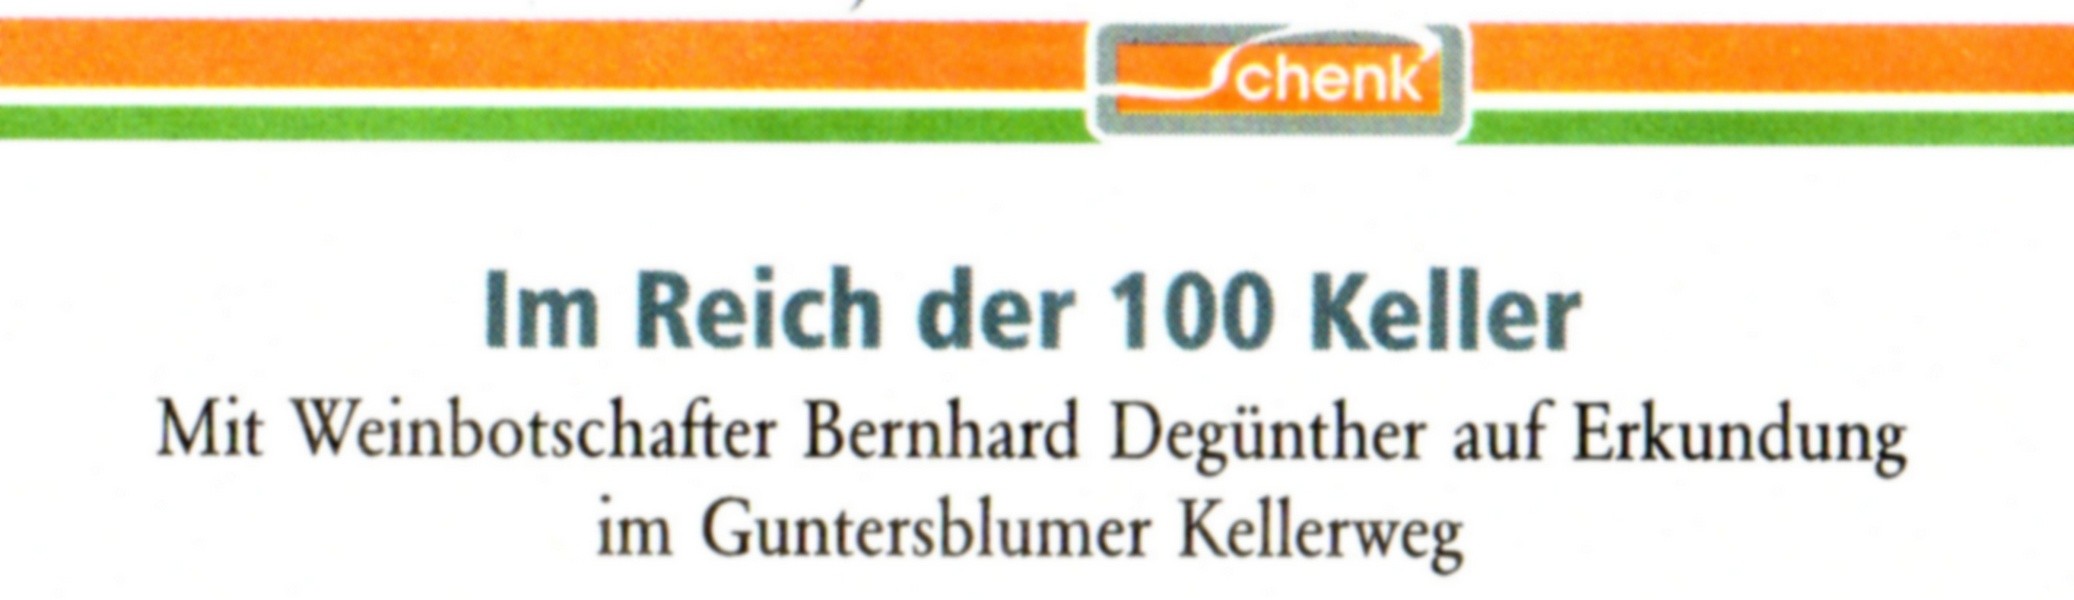 Im Reich der 100 Keller (Kulturverein Guntersblum CC BY-NC-SA)